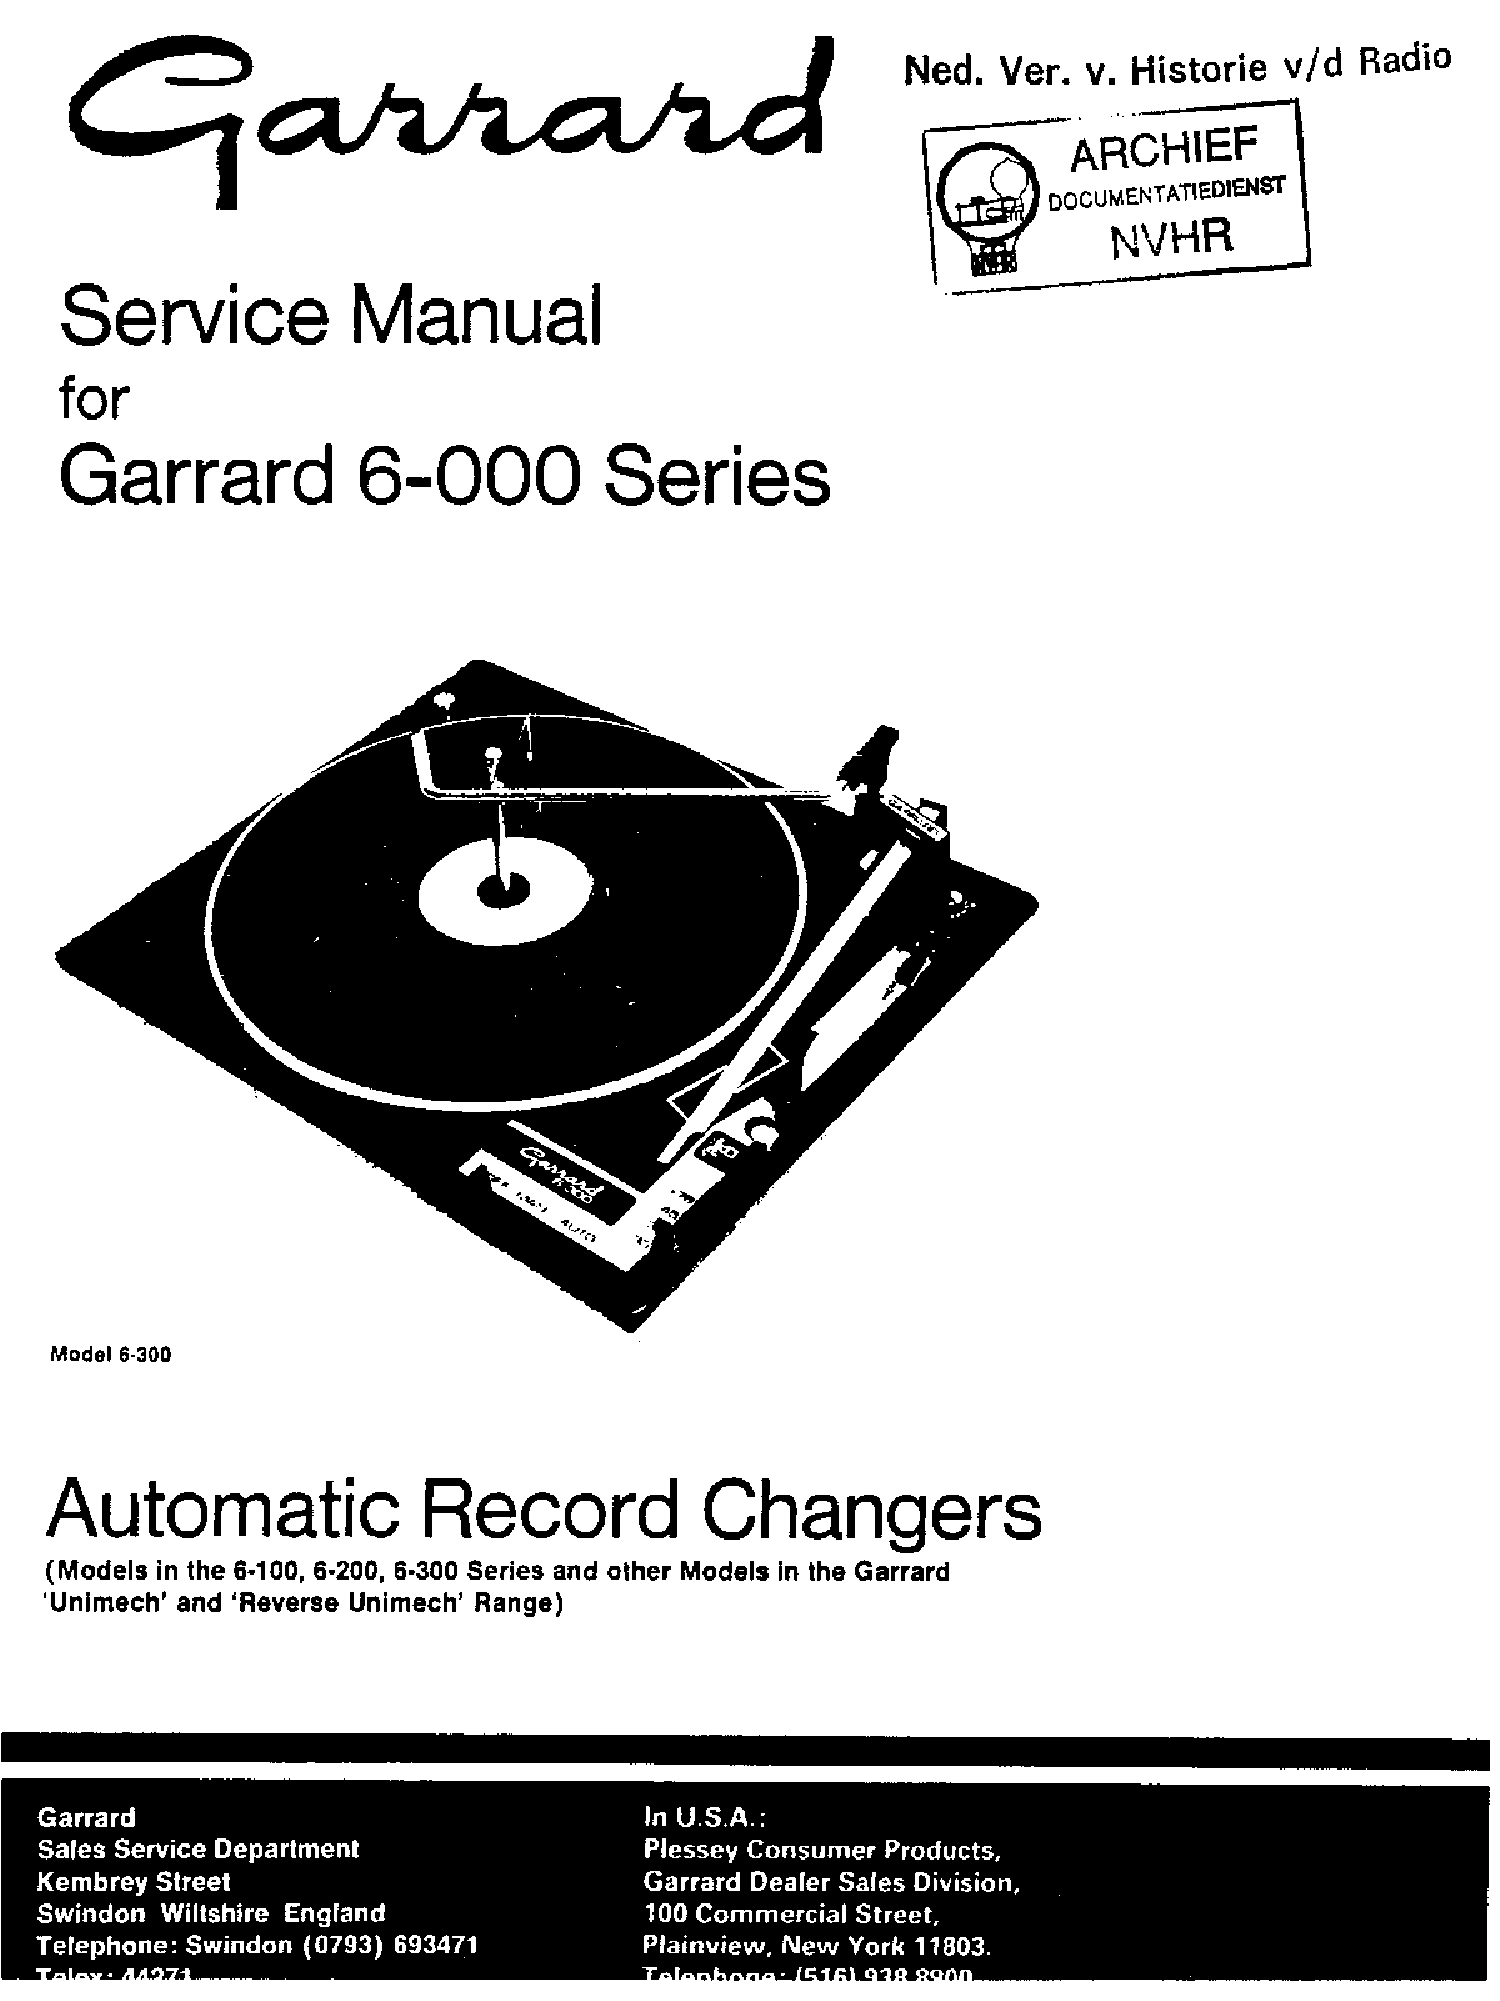 Garrard Turntable Repair Manual